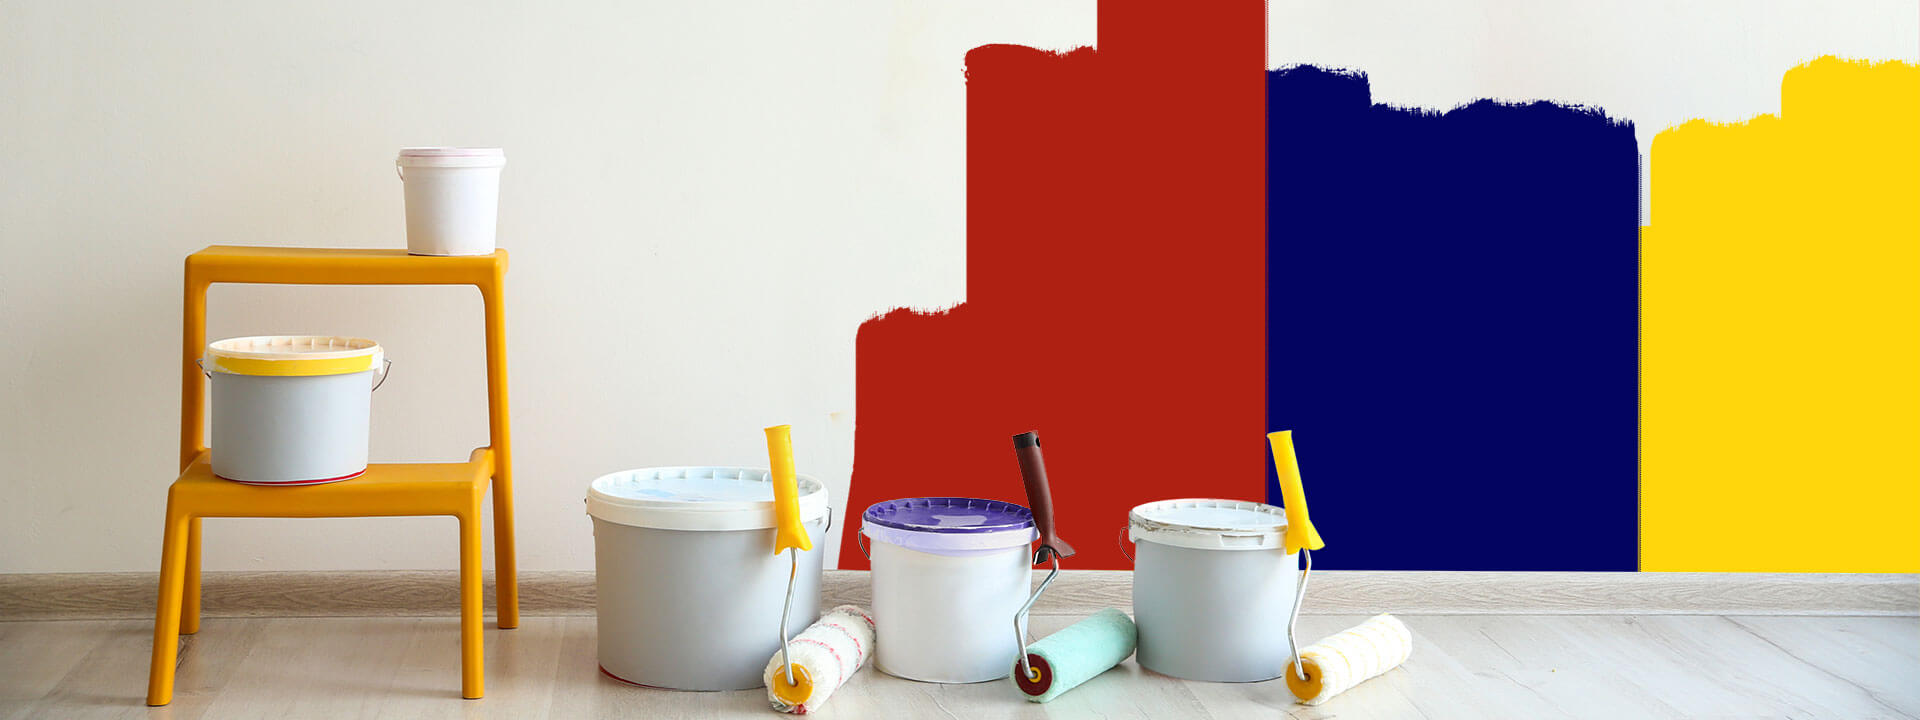 Wand wird mit roter, blauer und gelber Farbe gestrichen